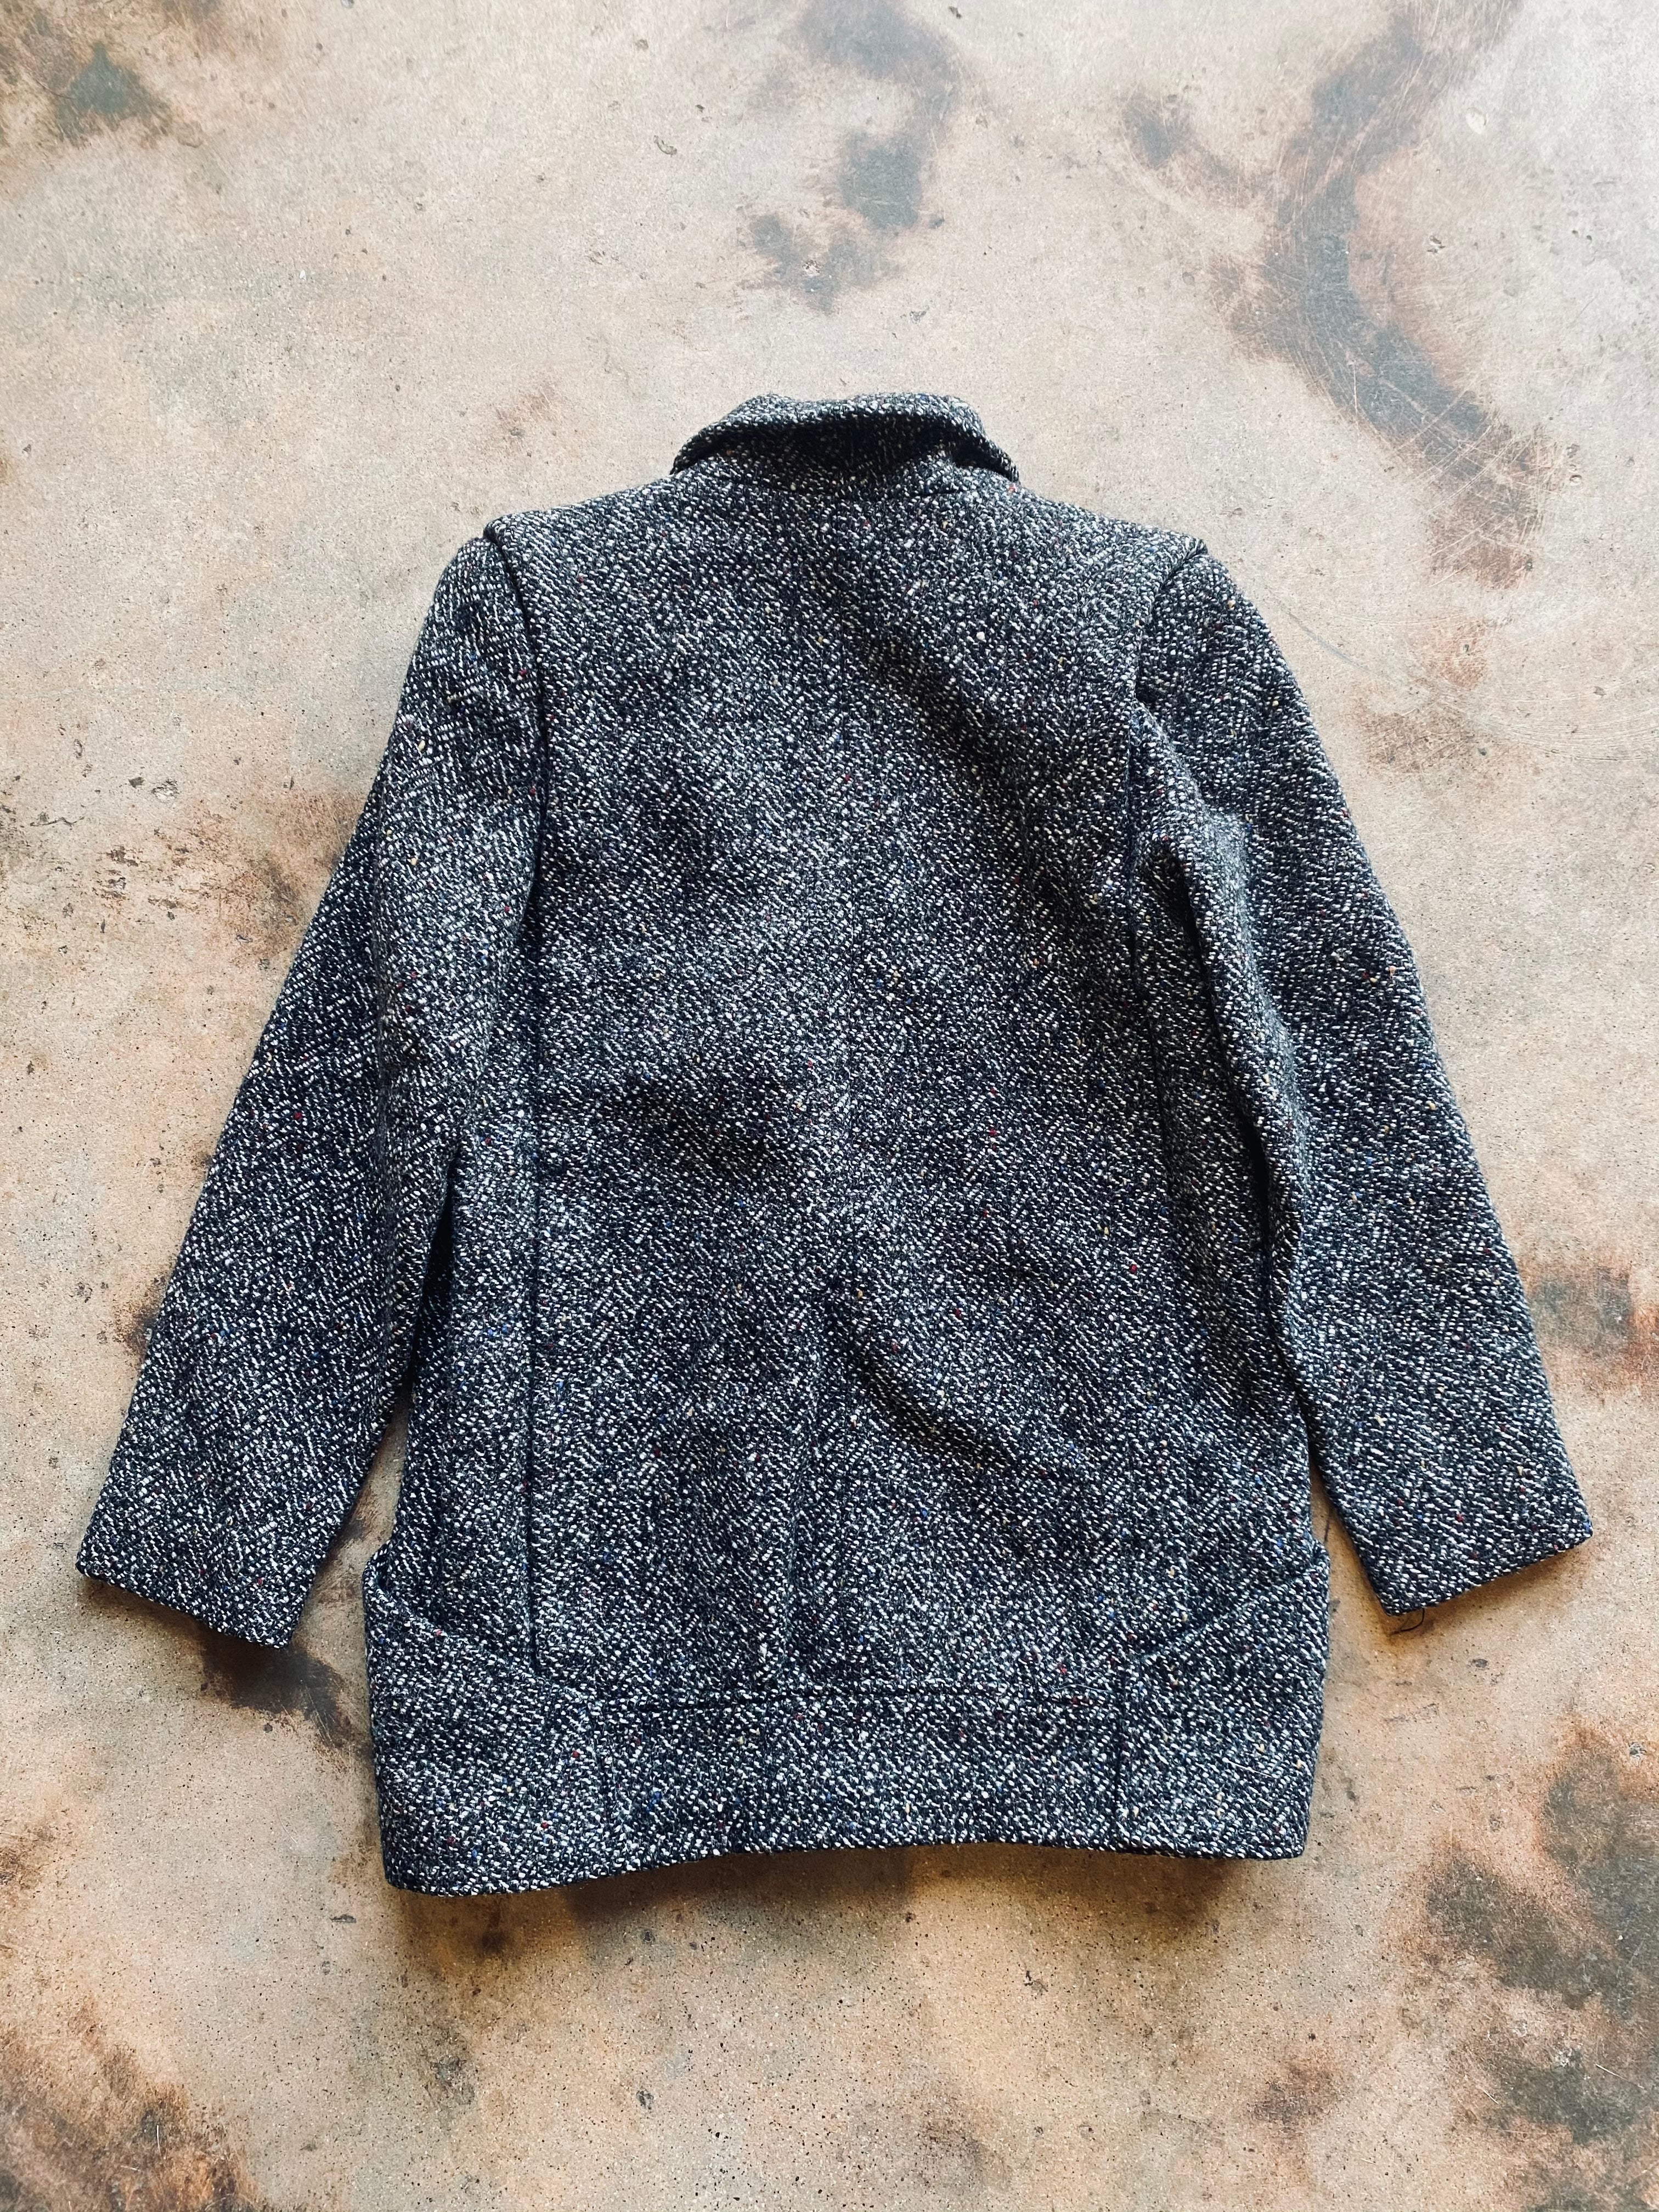 1980s Braefair Tweed Blazer/Coat